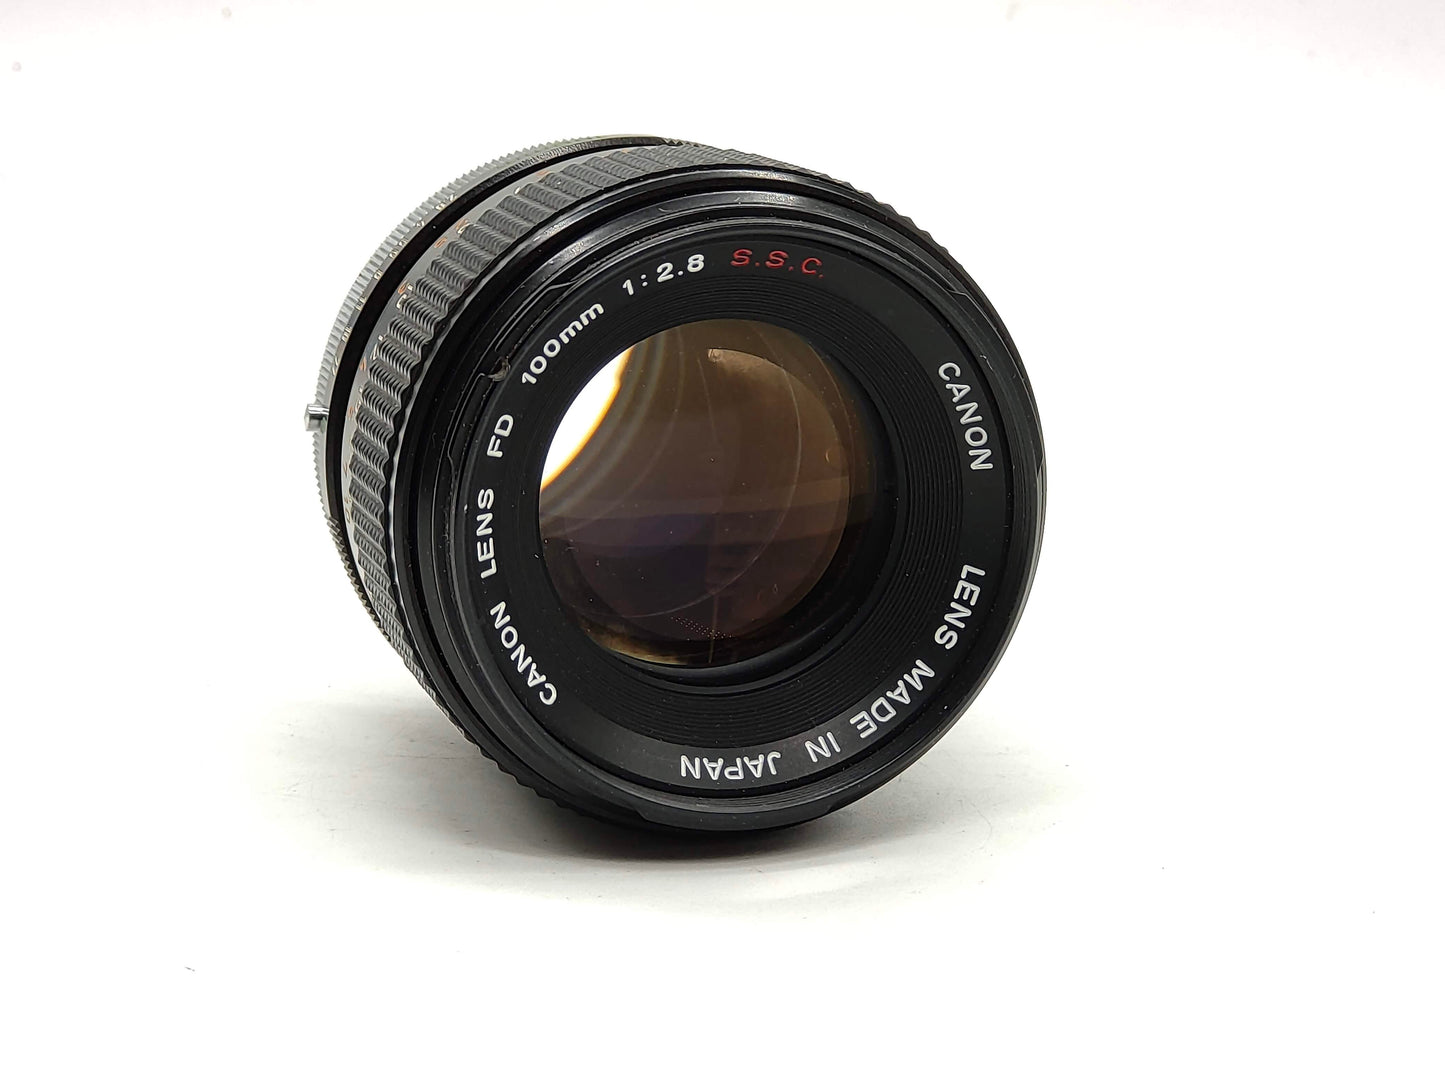 Canon 100mm f/2.8 portrait lens